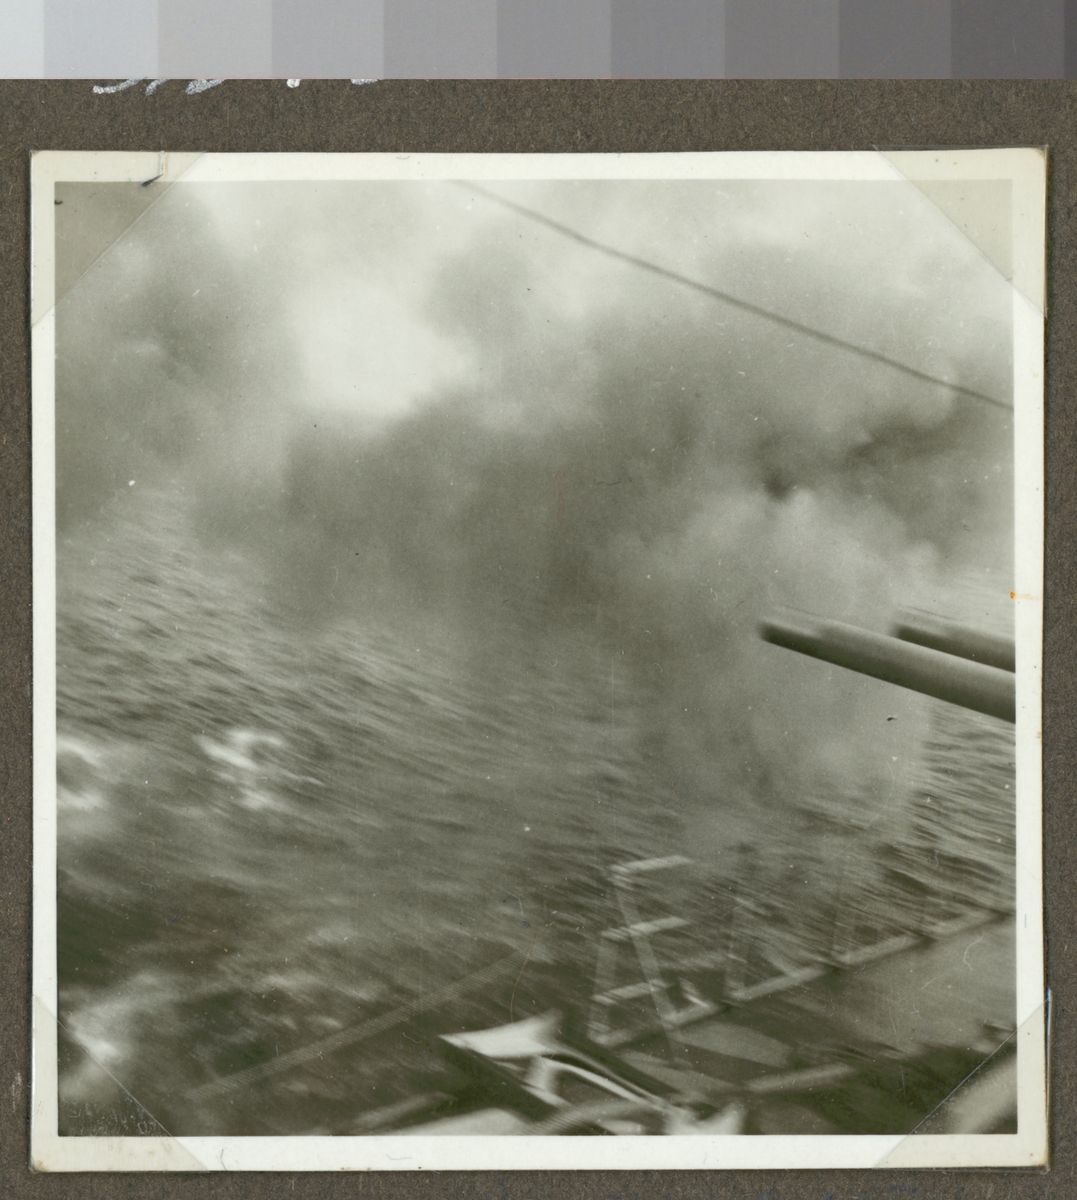 Denna oskarpa fotografi visar kanoner på ett örlogsfartyg som precist har avlossats.